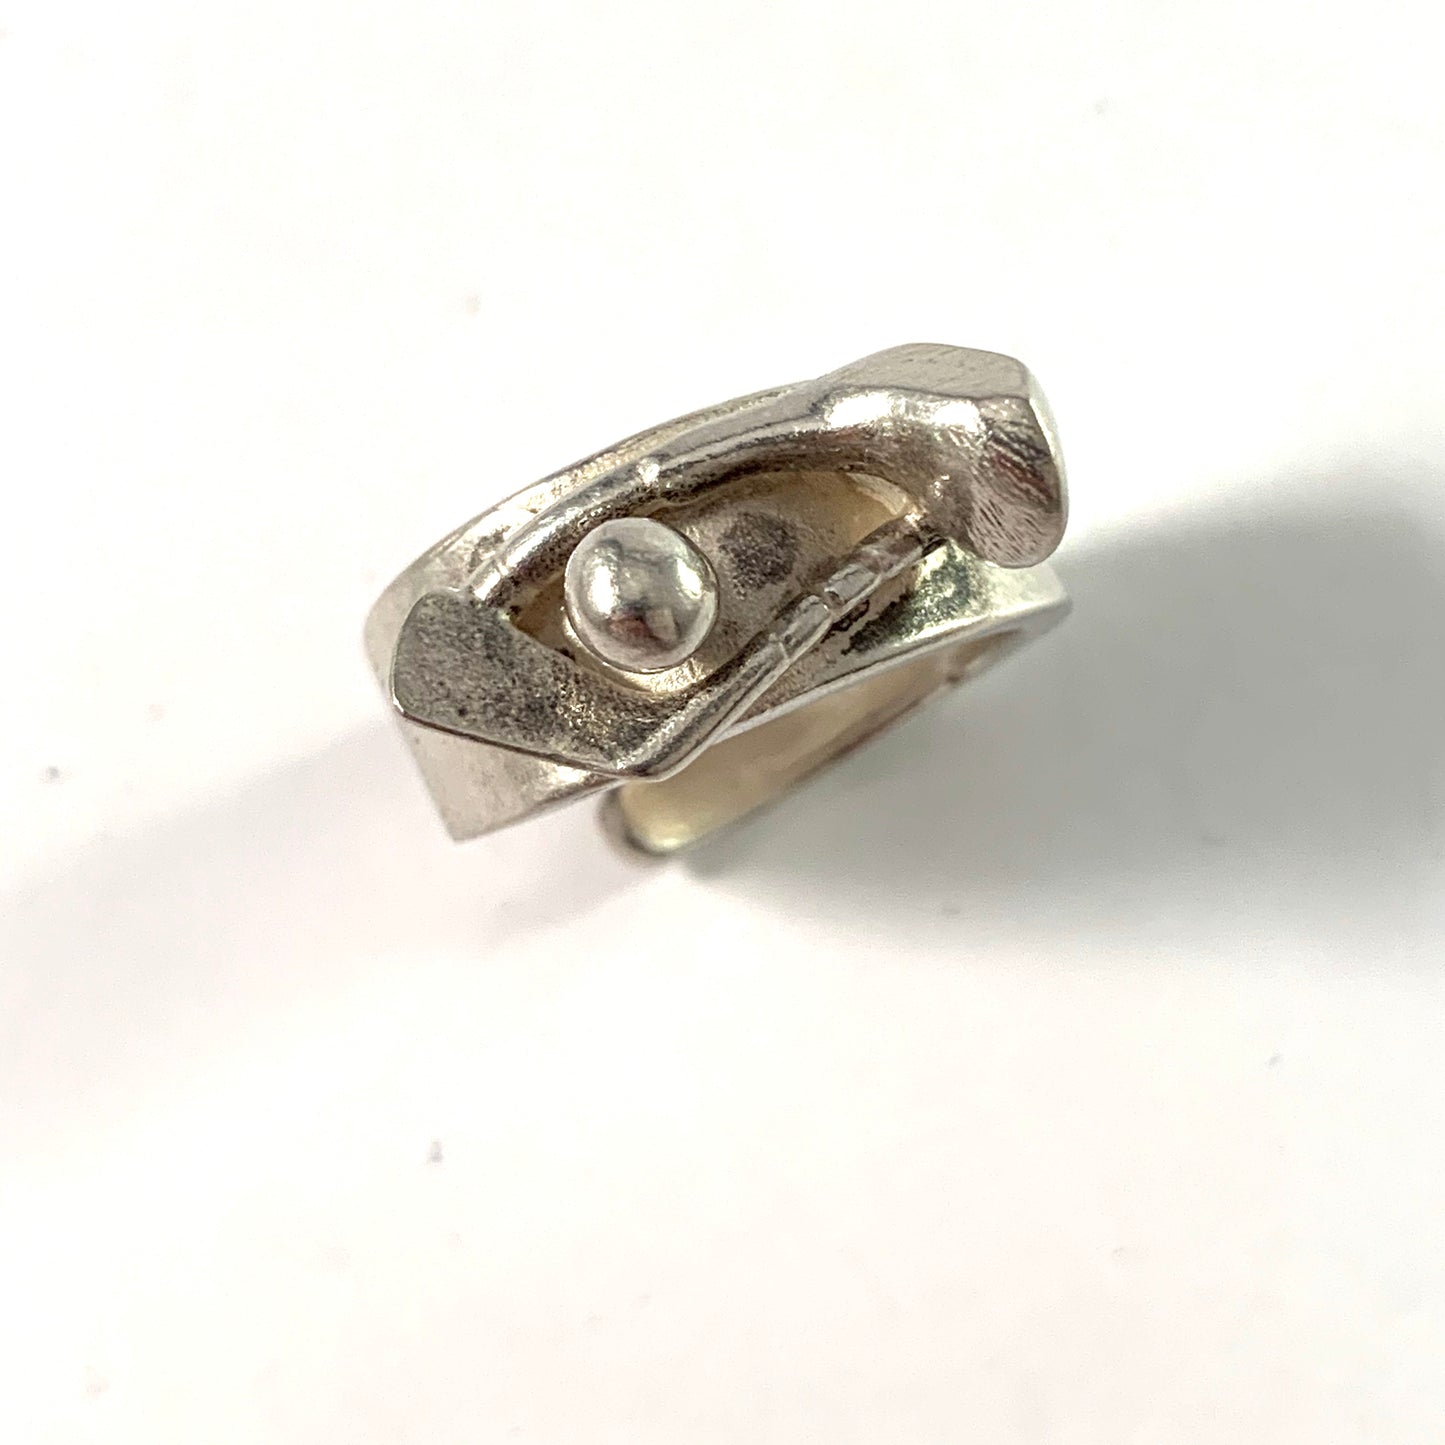 Gson Liedholm, Sweden. Vintage Sterling Silver Novelty Golfer Unisex Ring. Signed